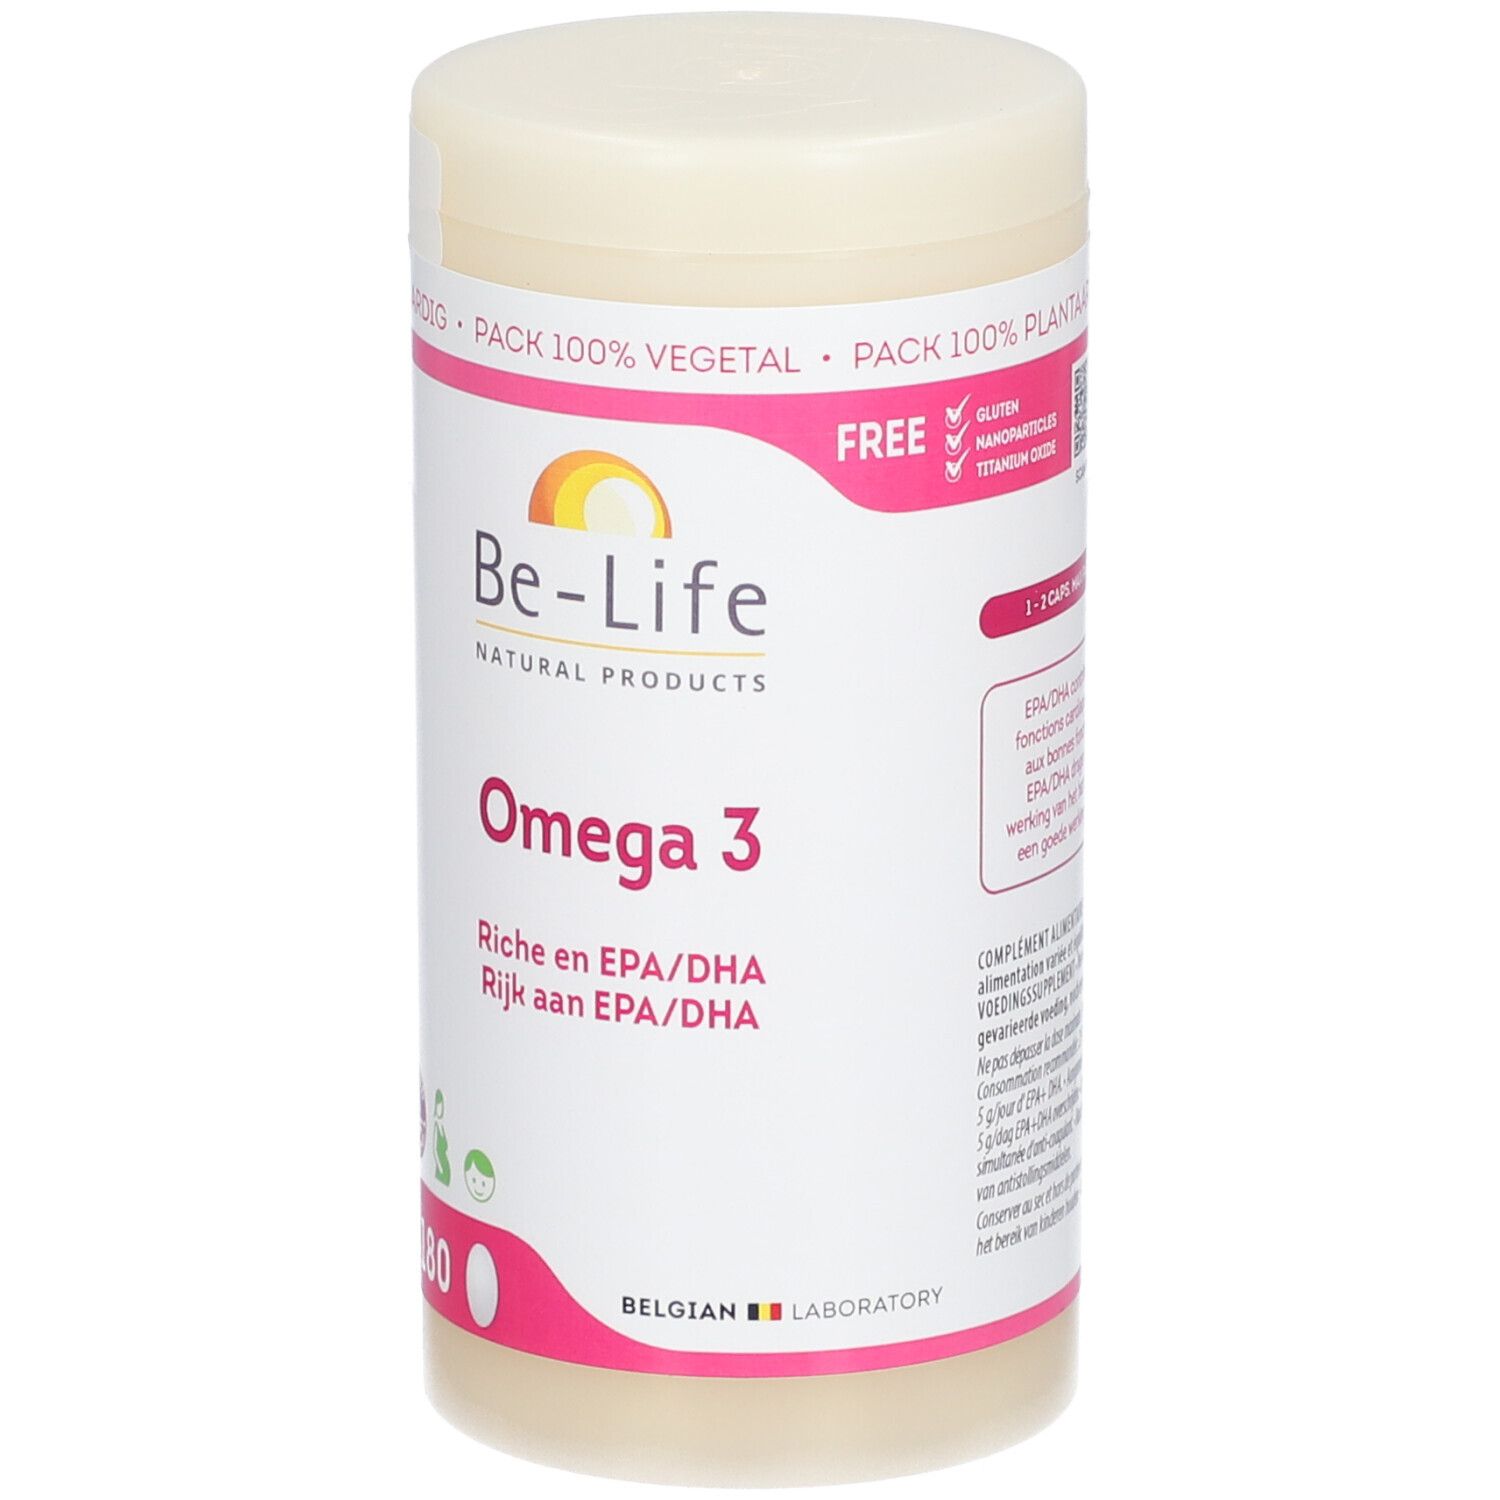 Be-Life Omega 3 500mg